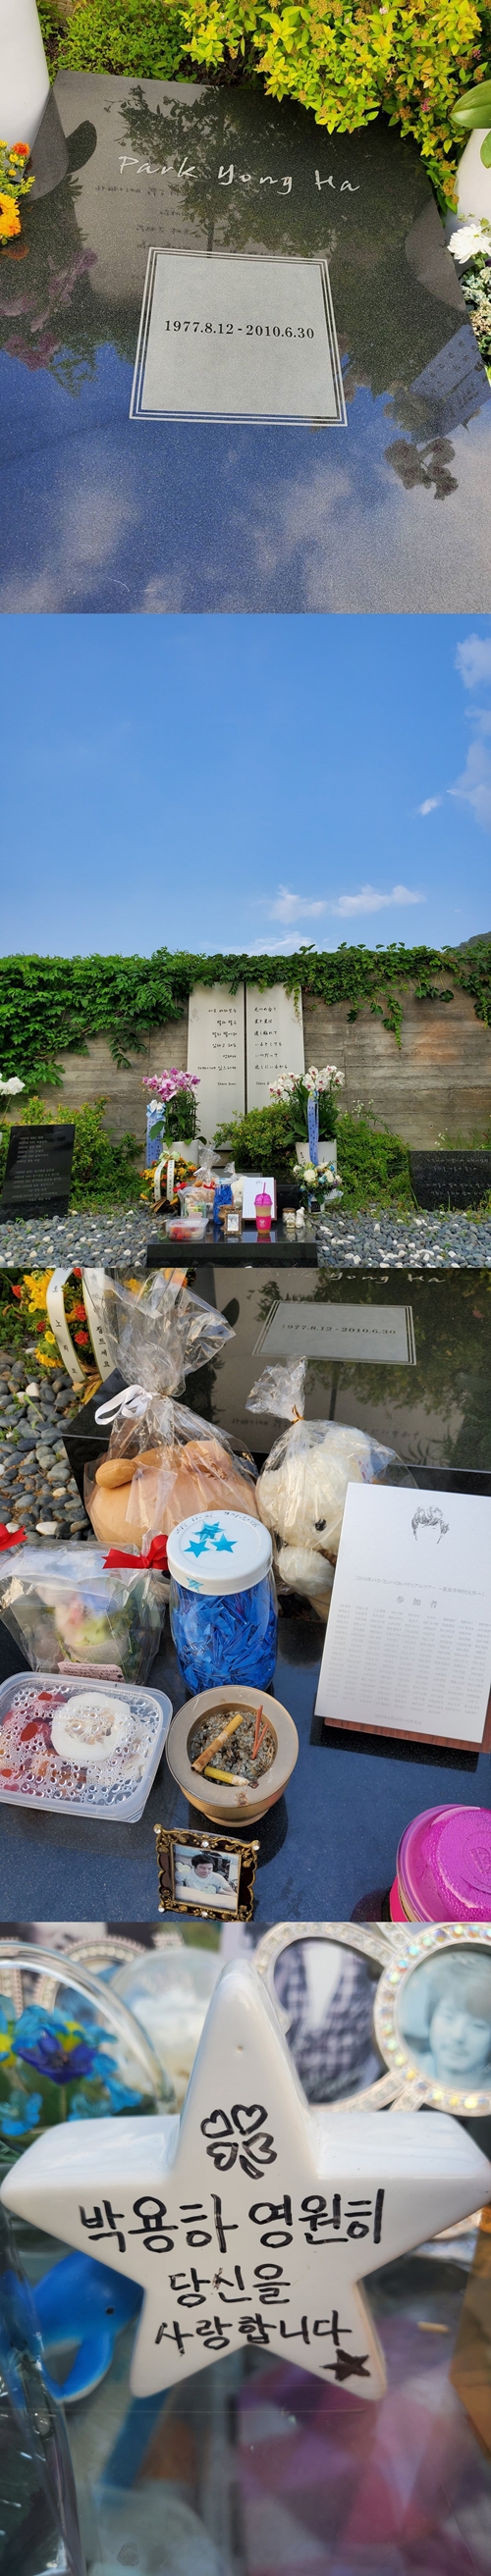 ジェジュン 冬ソナ 出演の故パク ヨンハの墓参りへ 兄さんと過ごした思い出は スポーツソウル日本版